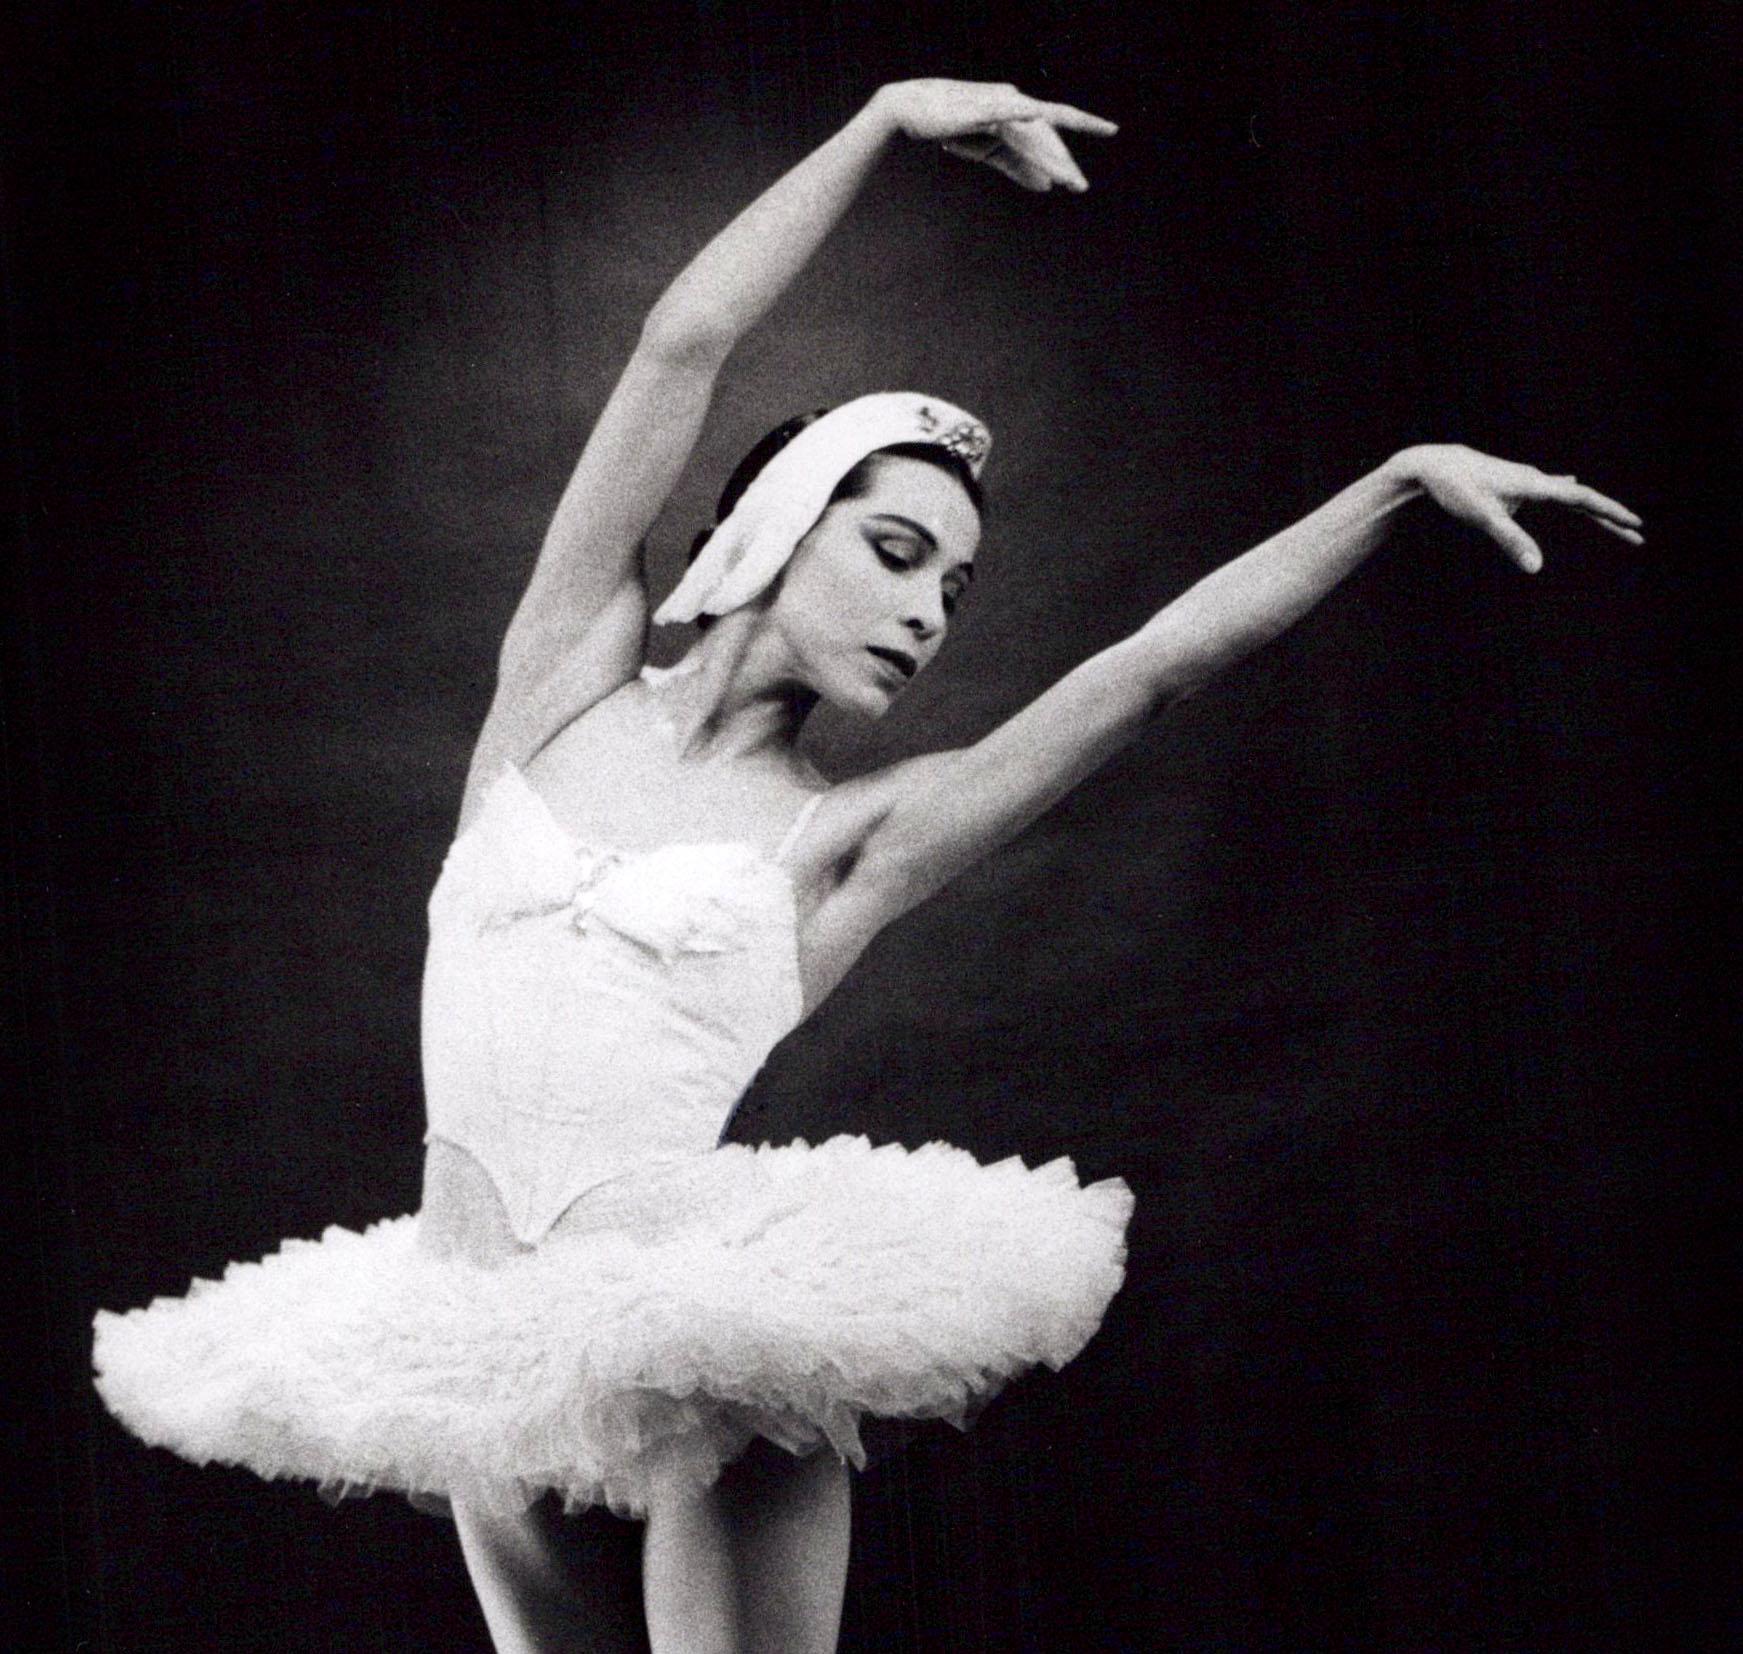 La célèbre ballerine amérindienne Maria Tallchief dansant « Swan Lake » (le lac de Swan) - Photograph de Jack Mitchell